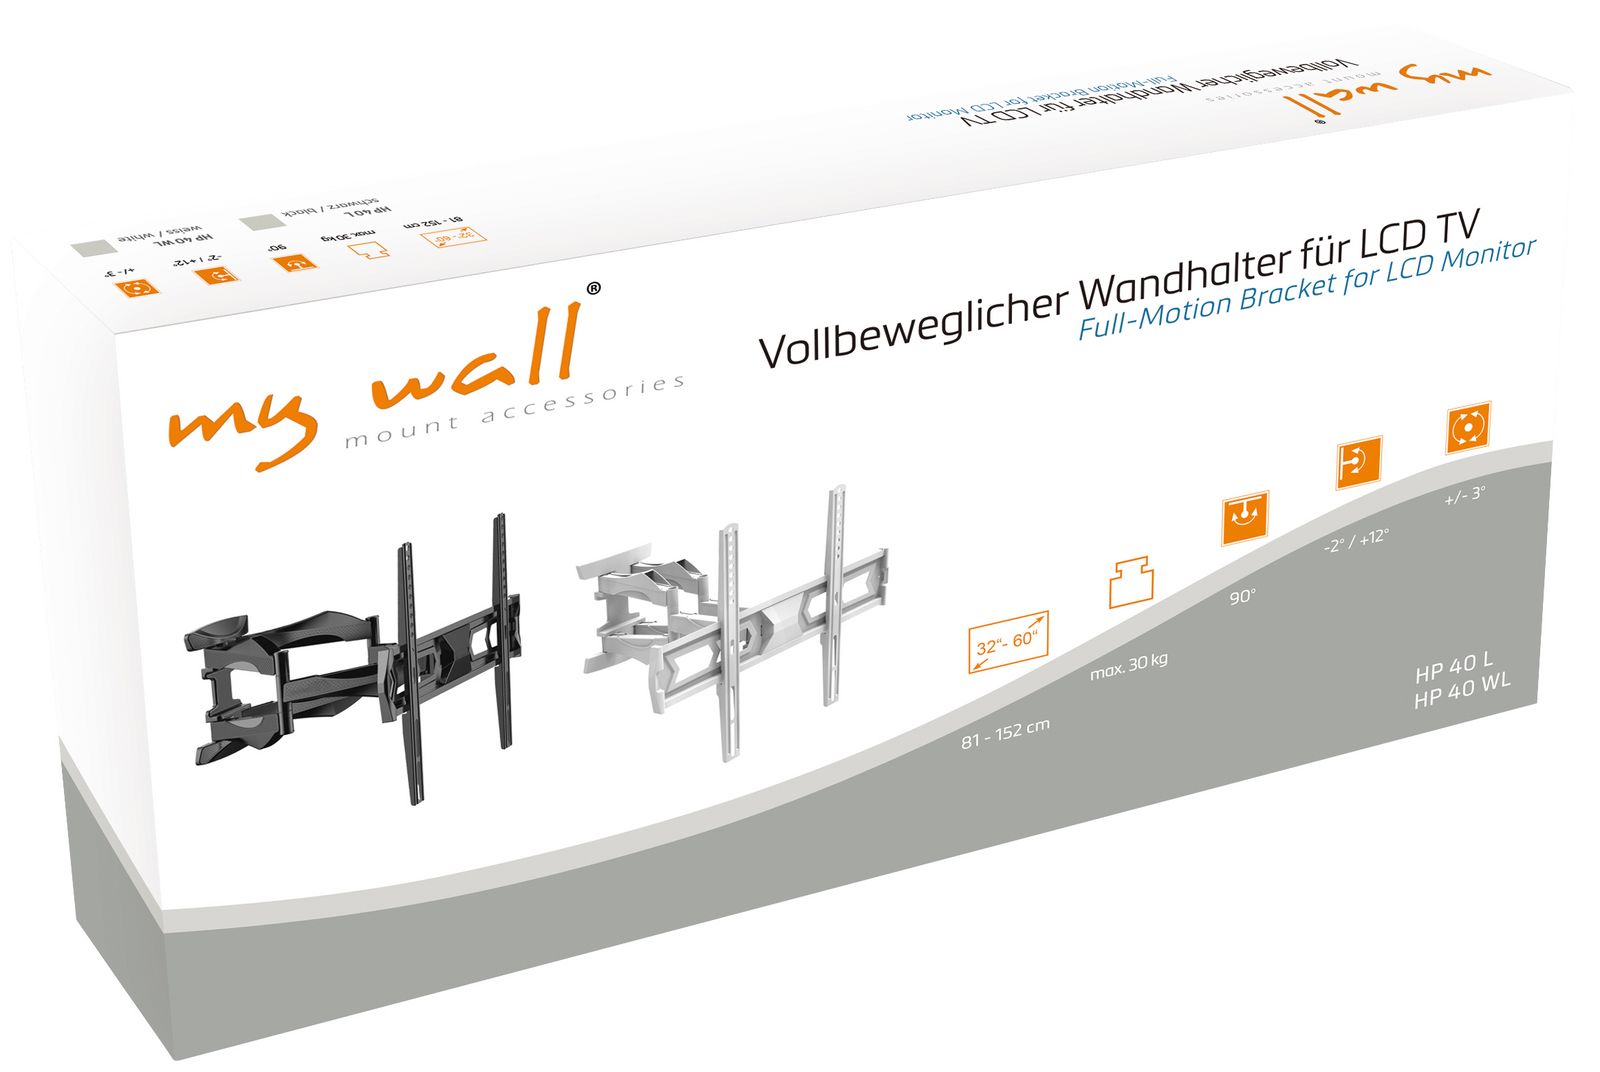 Vollbeweglicher Wandhalter für LCD TV My Wall HP40W-/bilder/big/hp40l,hp40wl_karton.jpg